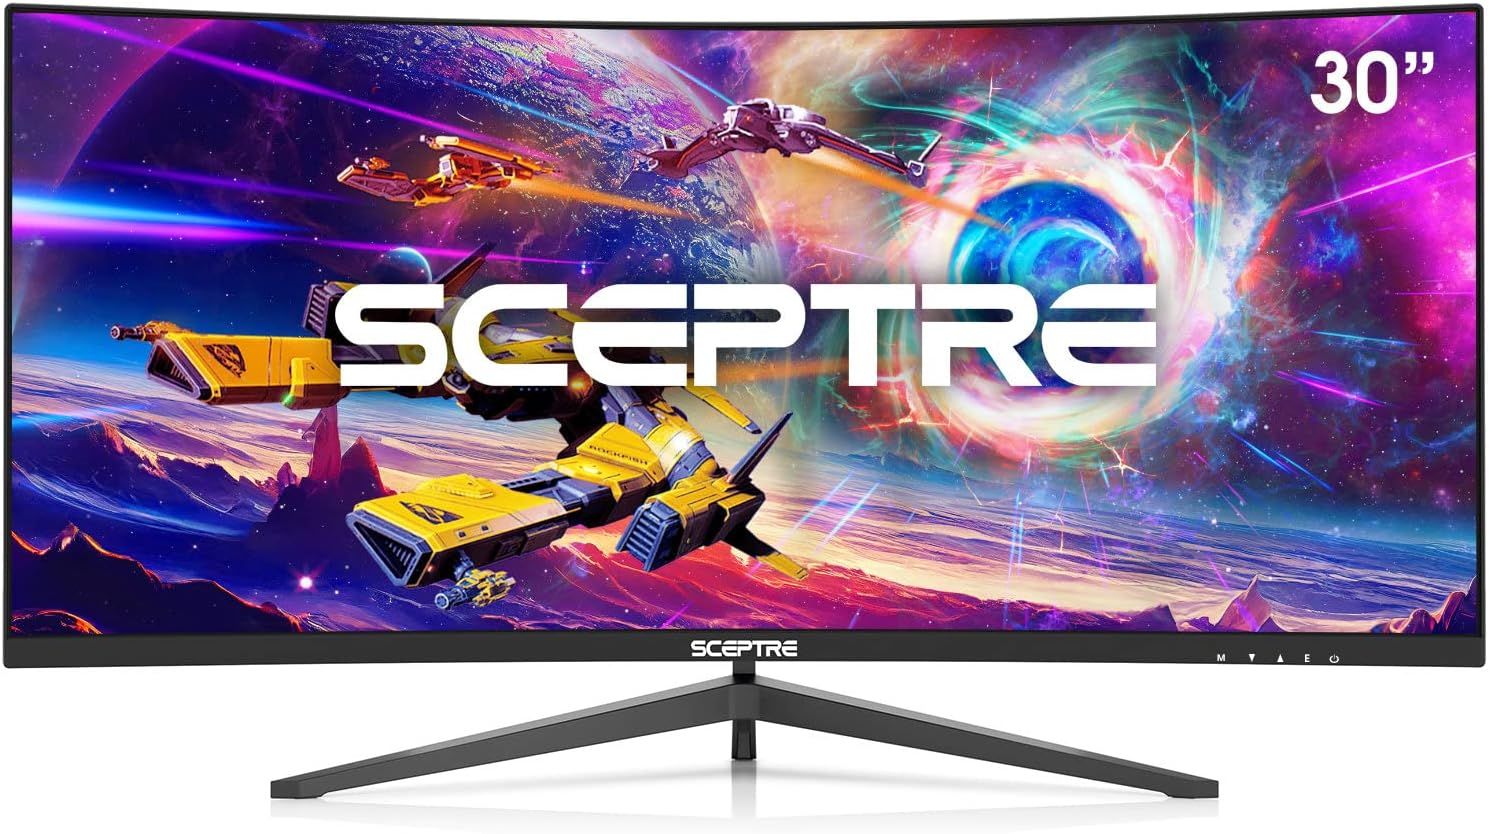 Sceptre 30-inch C305B-200UN1 gaming monitor